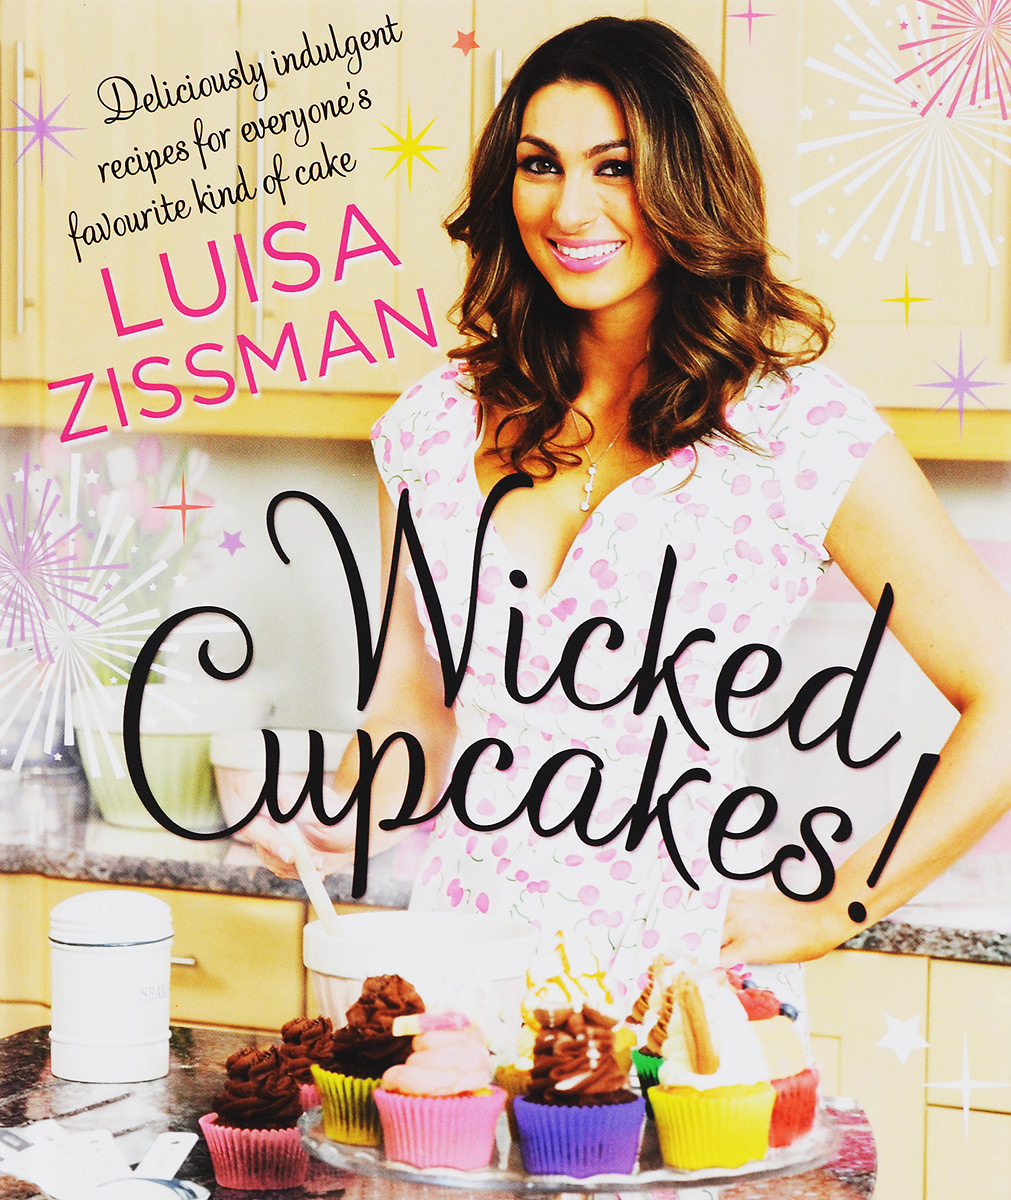 Wicked Cupcakes! | Zissman Luisa #1